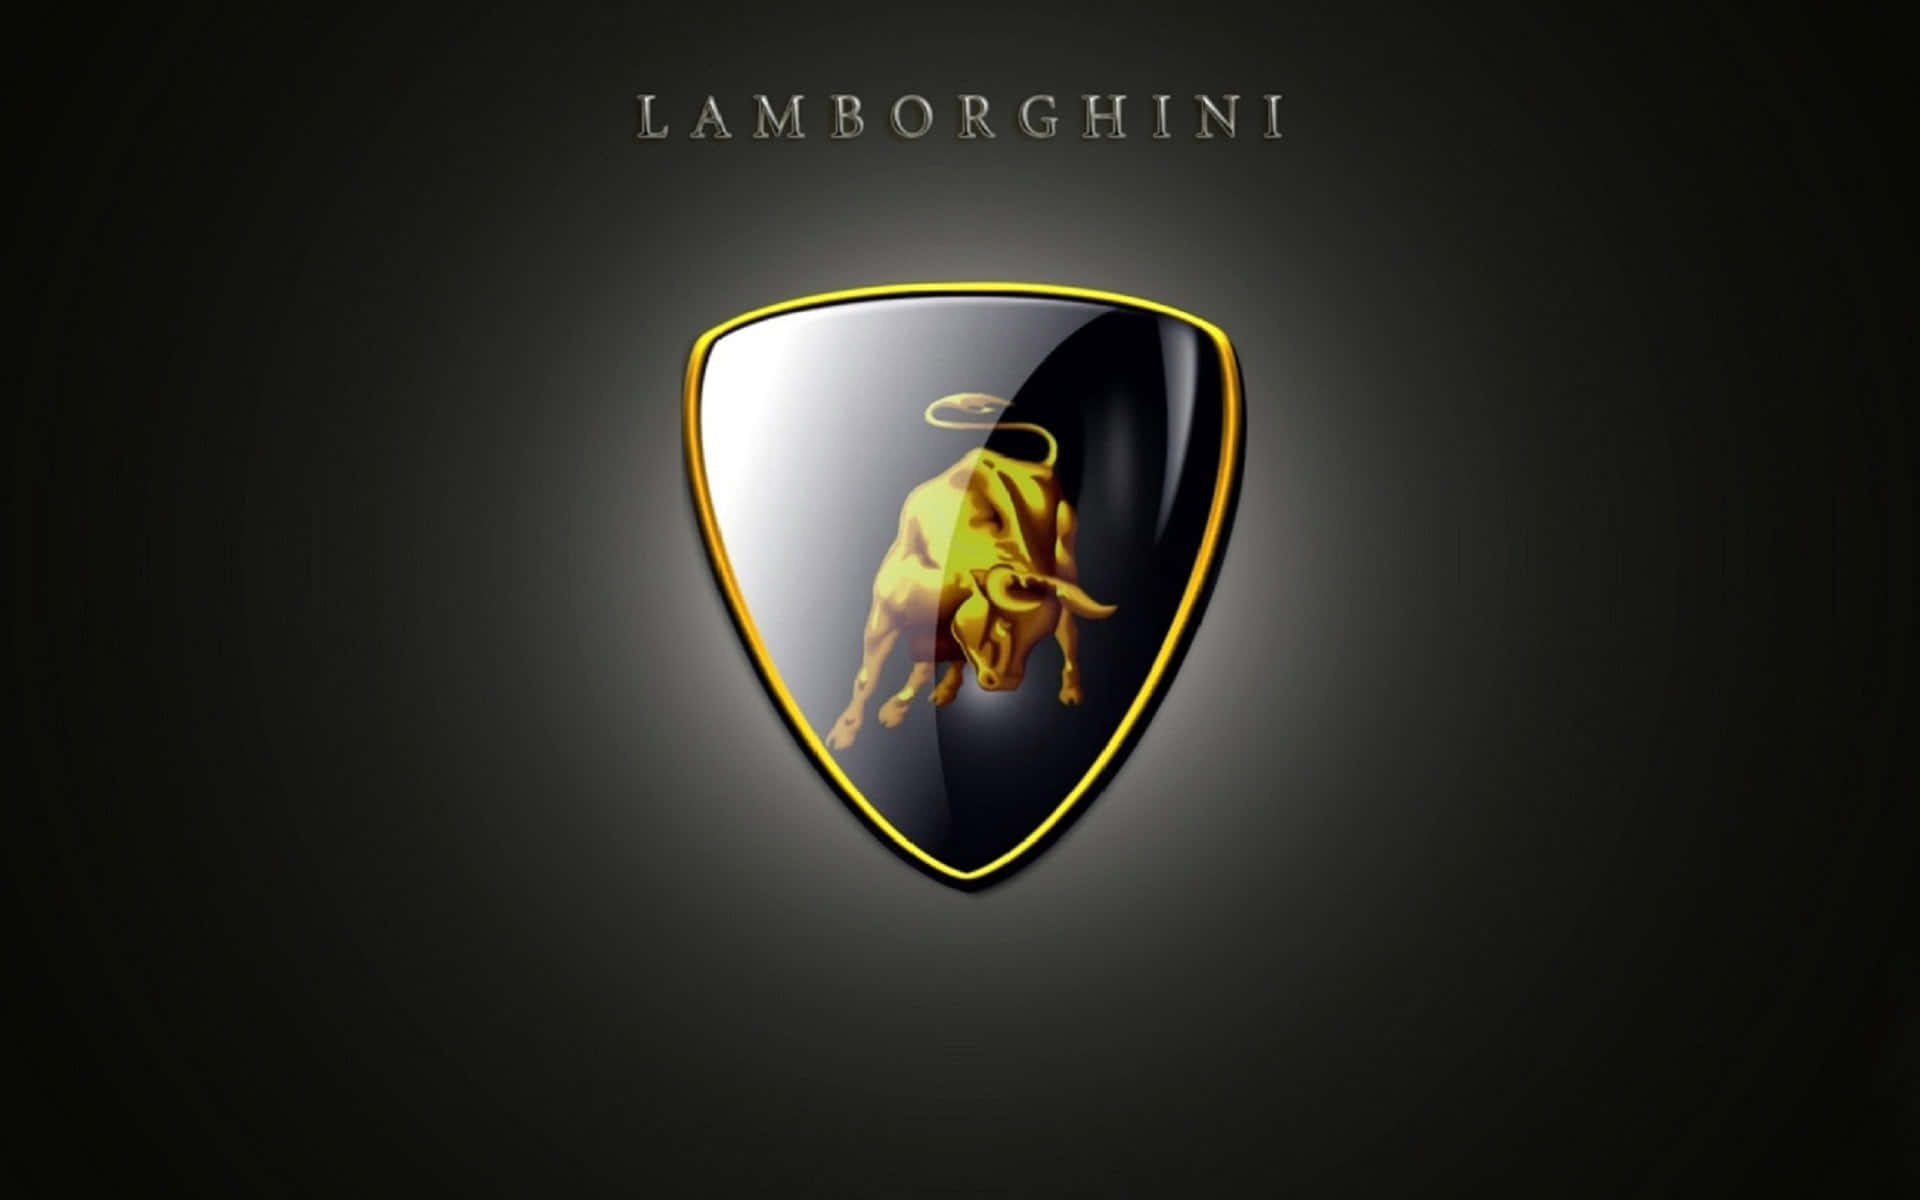 Eleganterhintergrund Mit Dem Lamborghini-logo